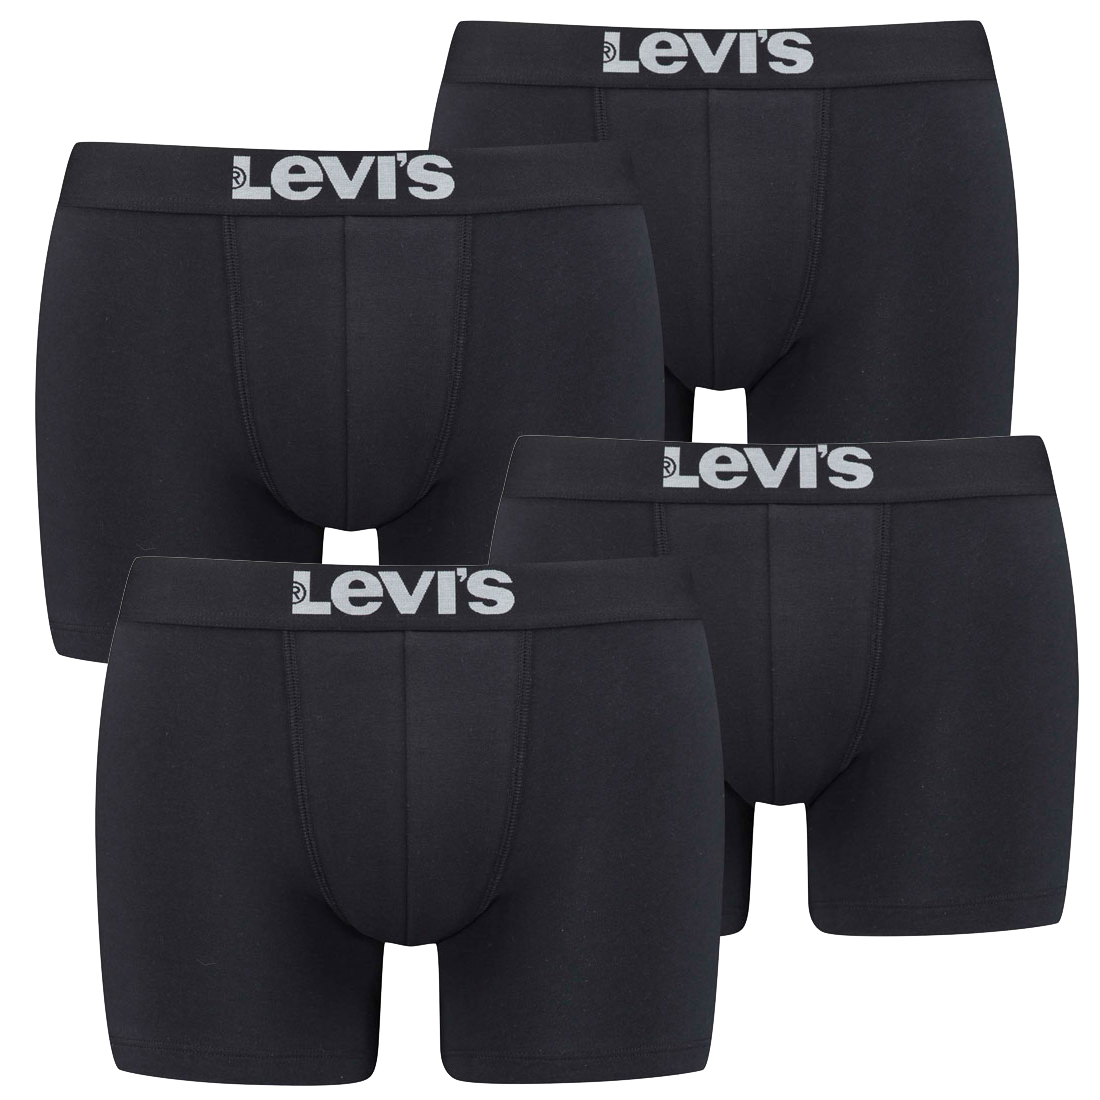 12 er Pack Levis Boxer Brief Boxershorts Men Herren Unterhose Pant Unterwäsche, Bekleidungsgröße:XXL, Farbe:884 - Jet Black